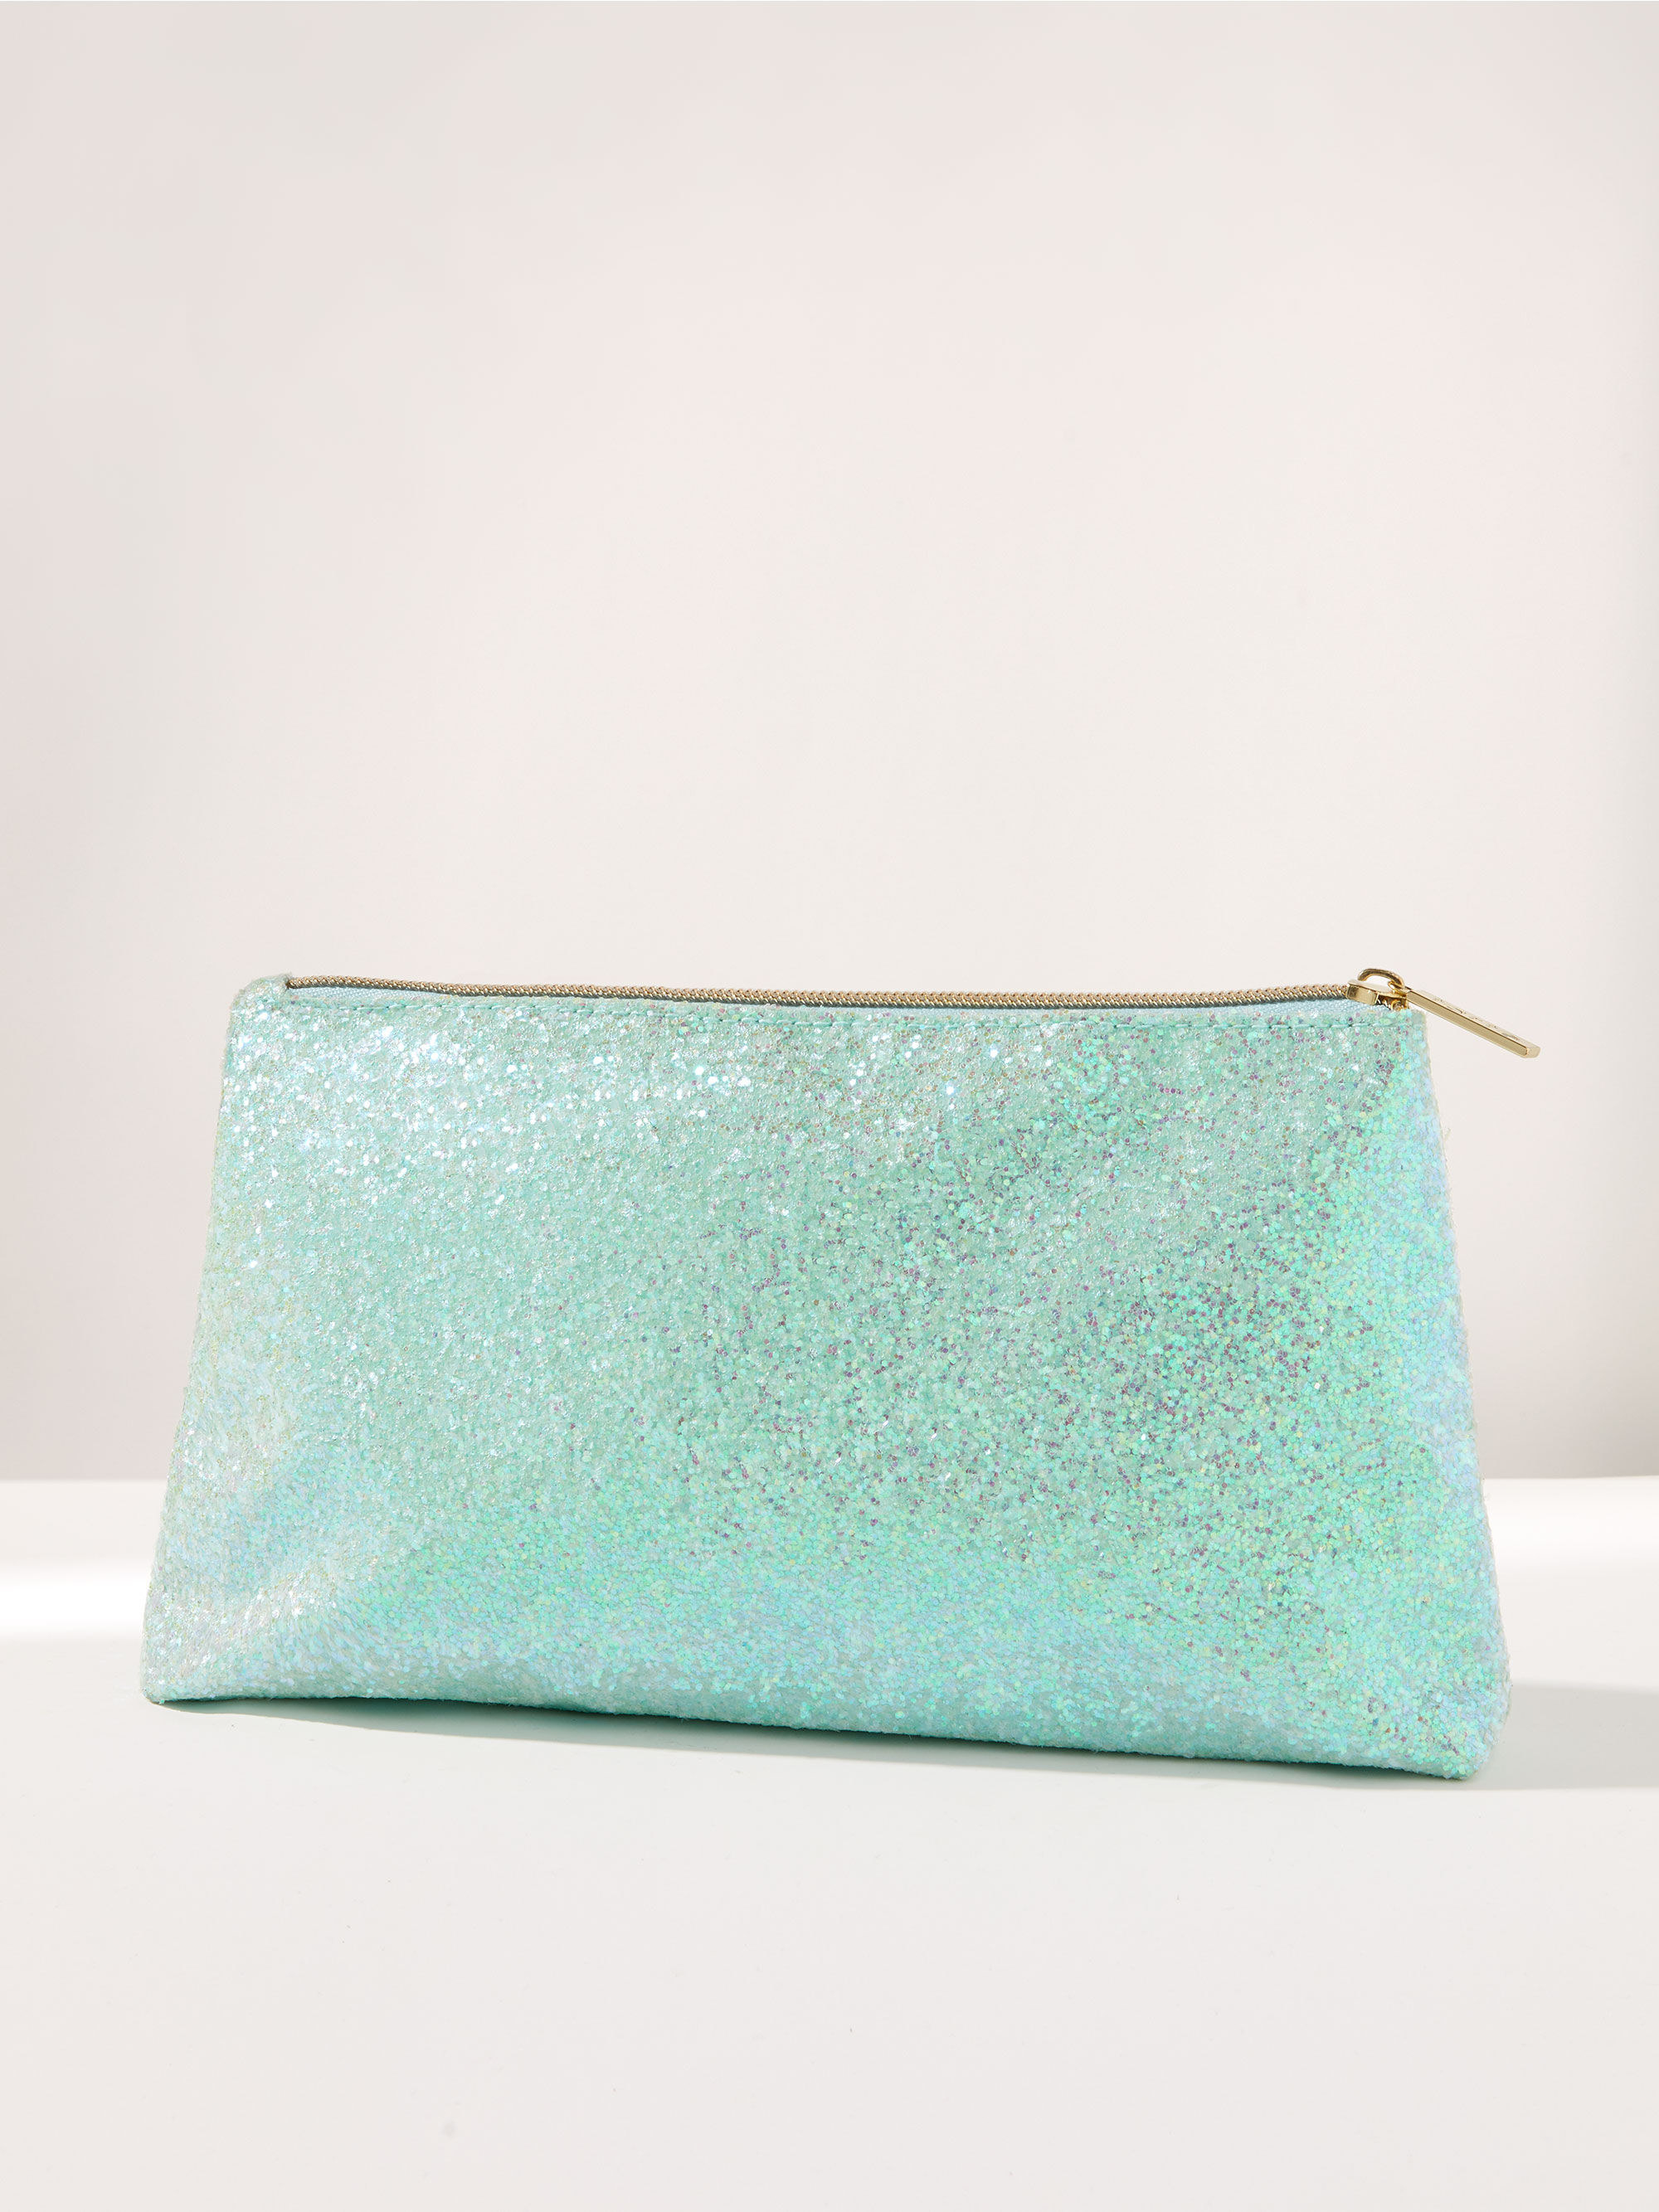 A  blue sparkly bag